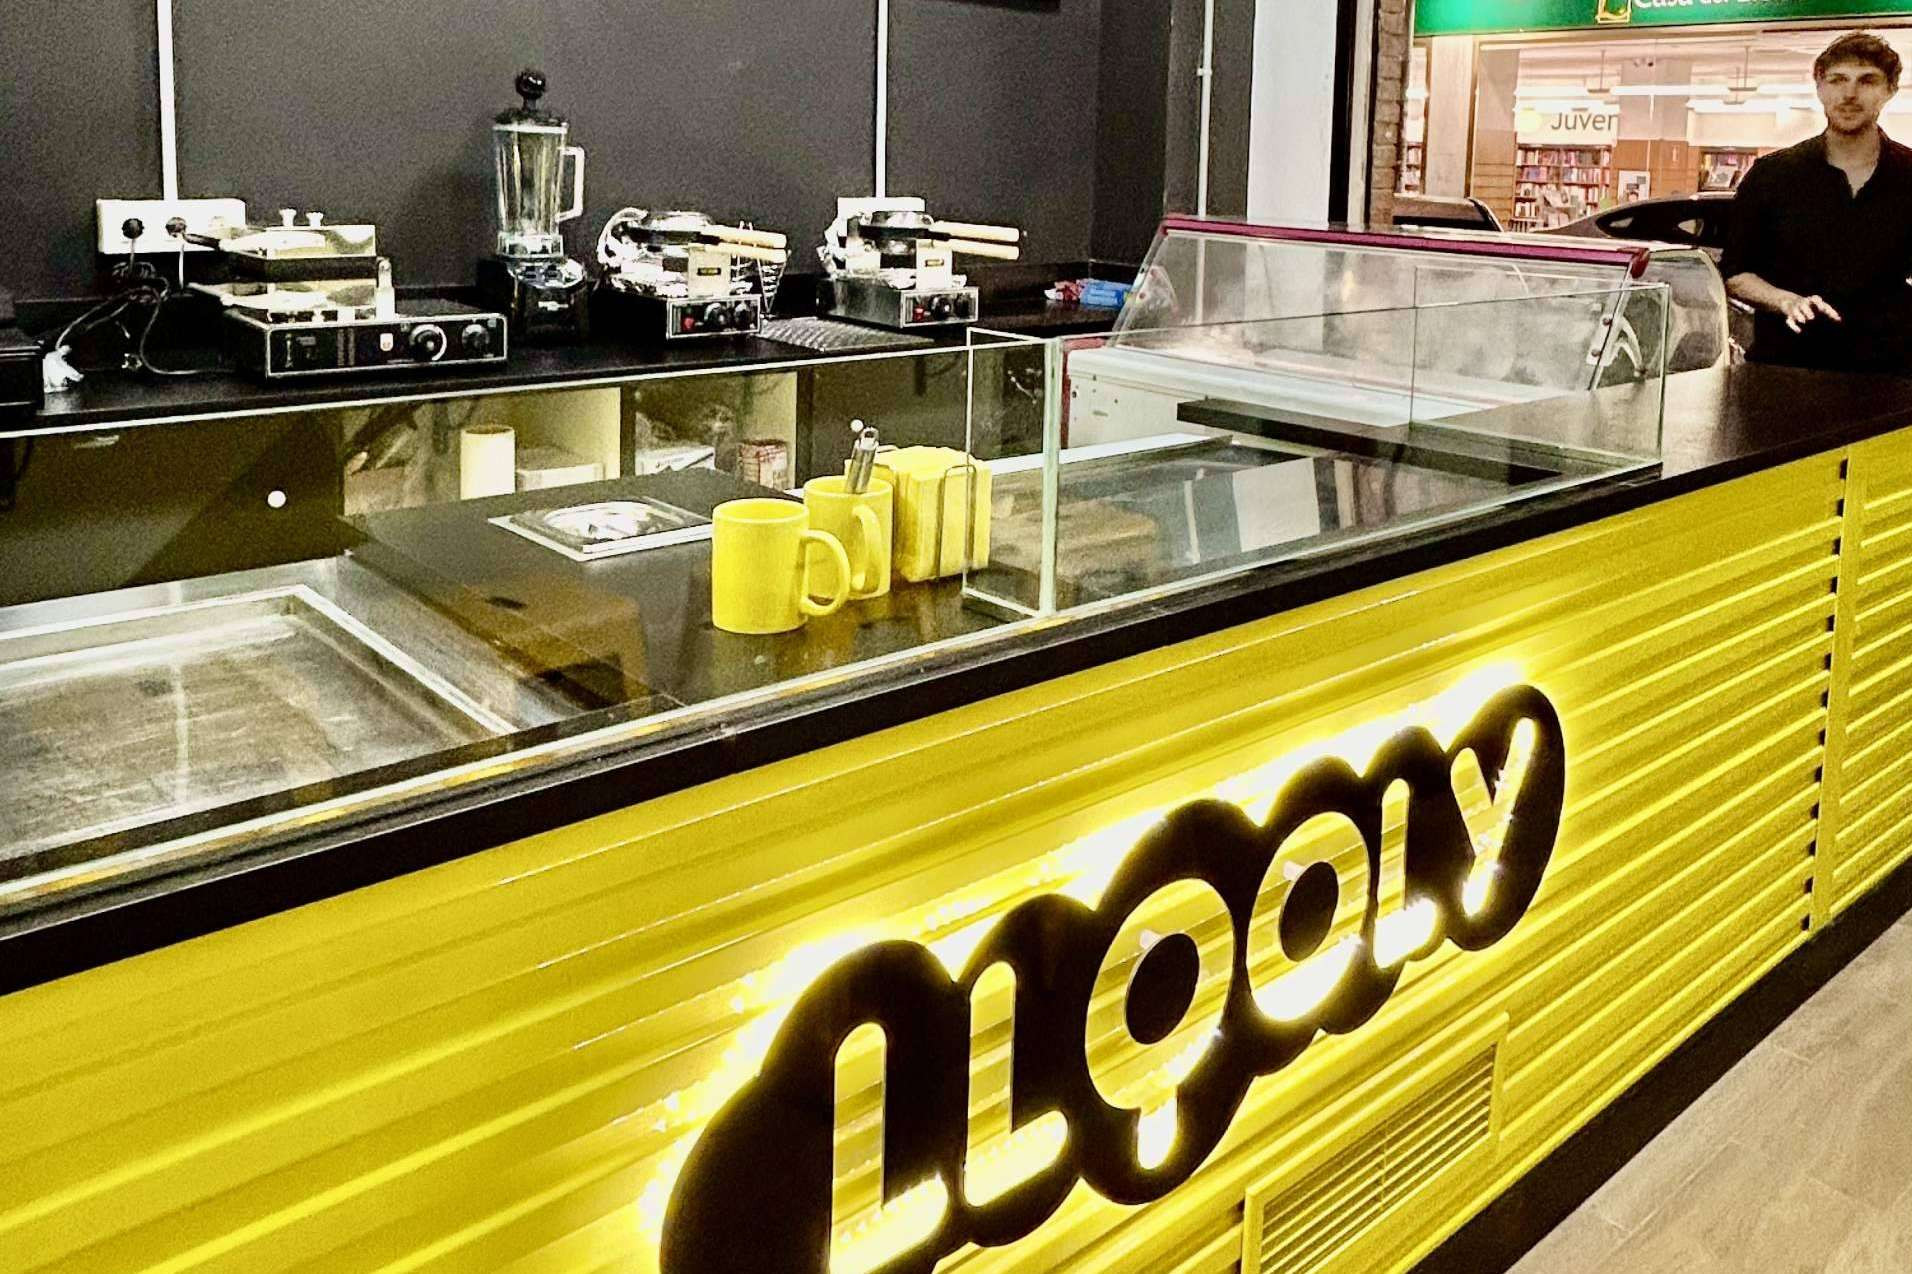  El éxito imparable de Llooly; 3 nuevas aperturas en Santa Pola, Sevilla y Algeciras en el mes de marzo 